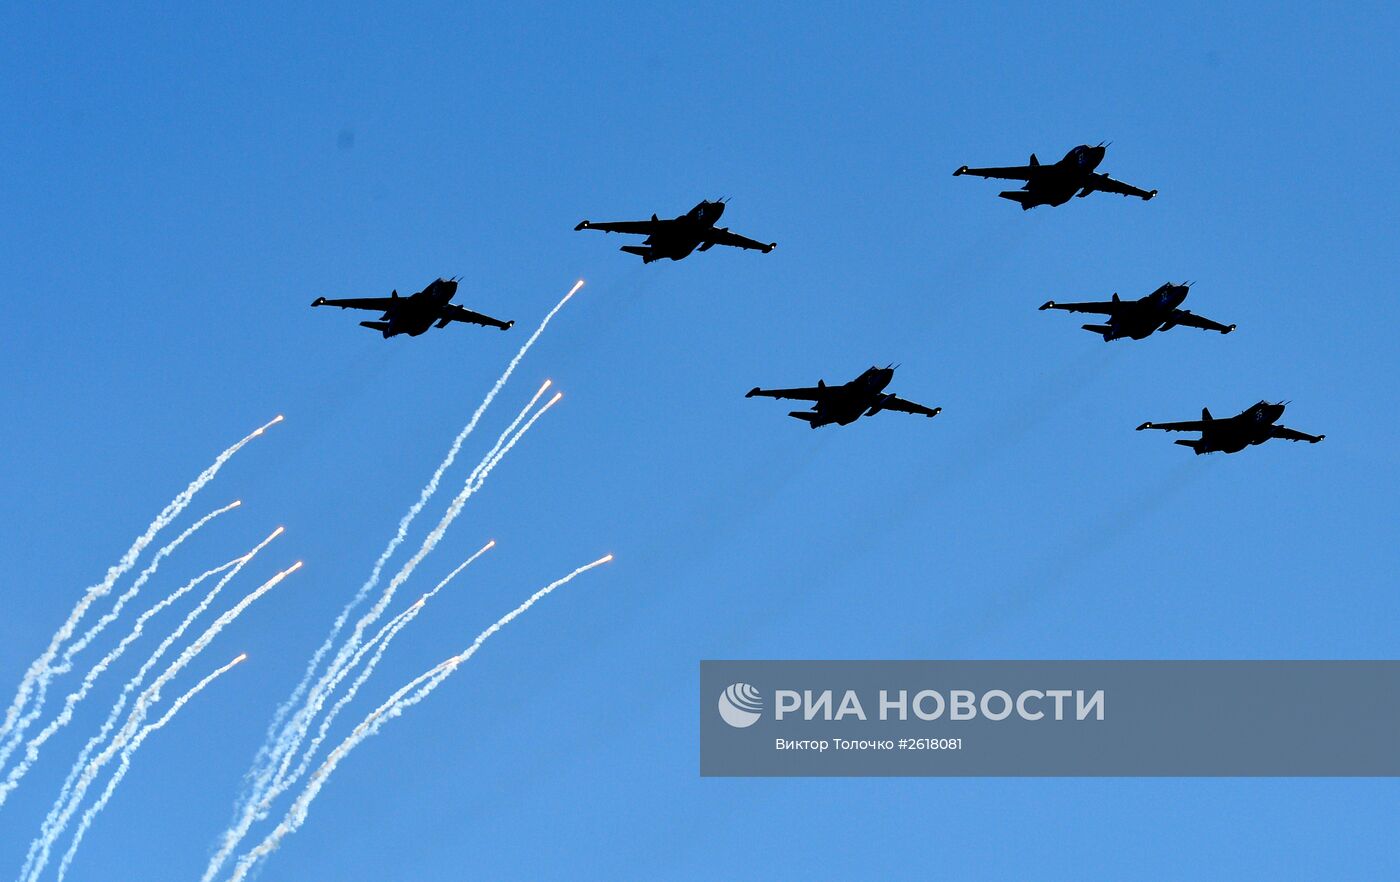 Тренировка воздушной части парада Победы в Минске